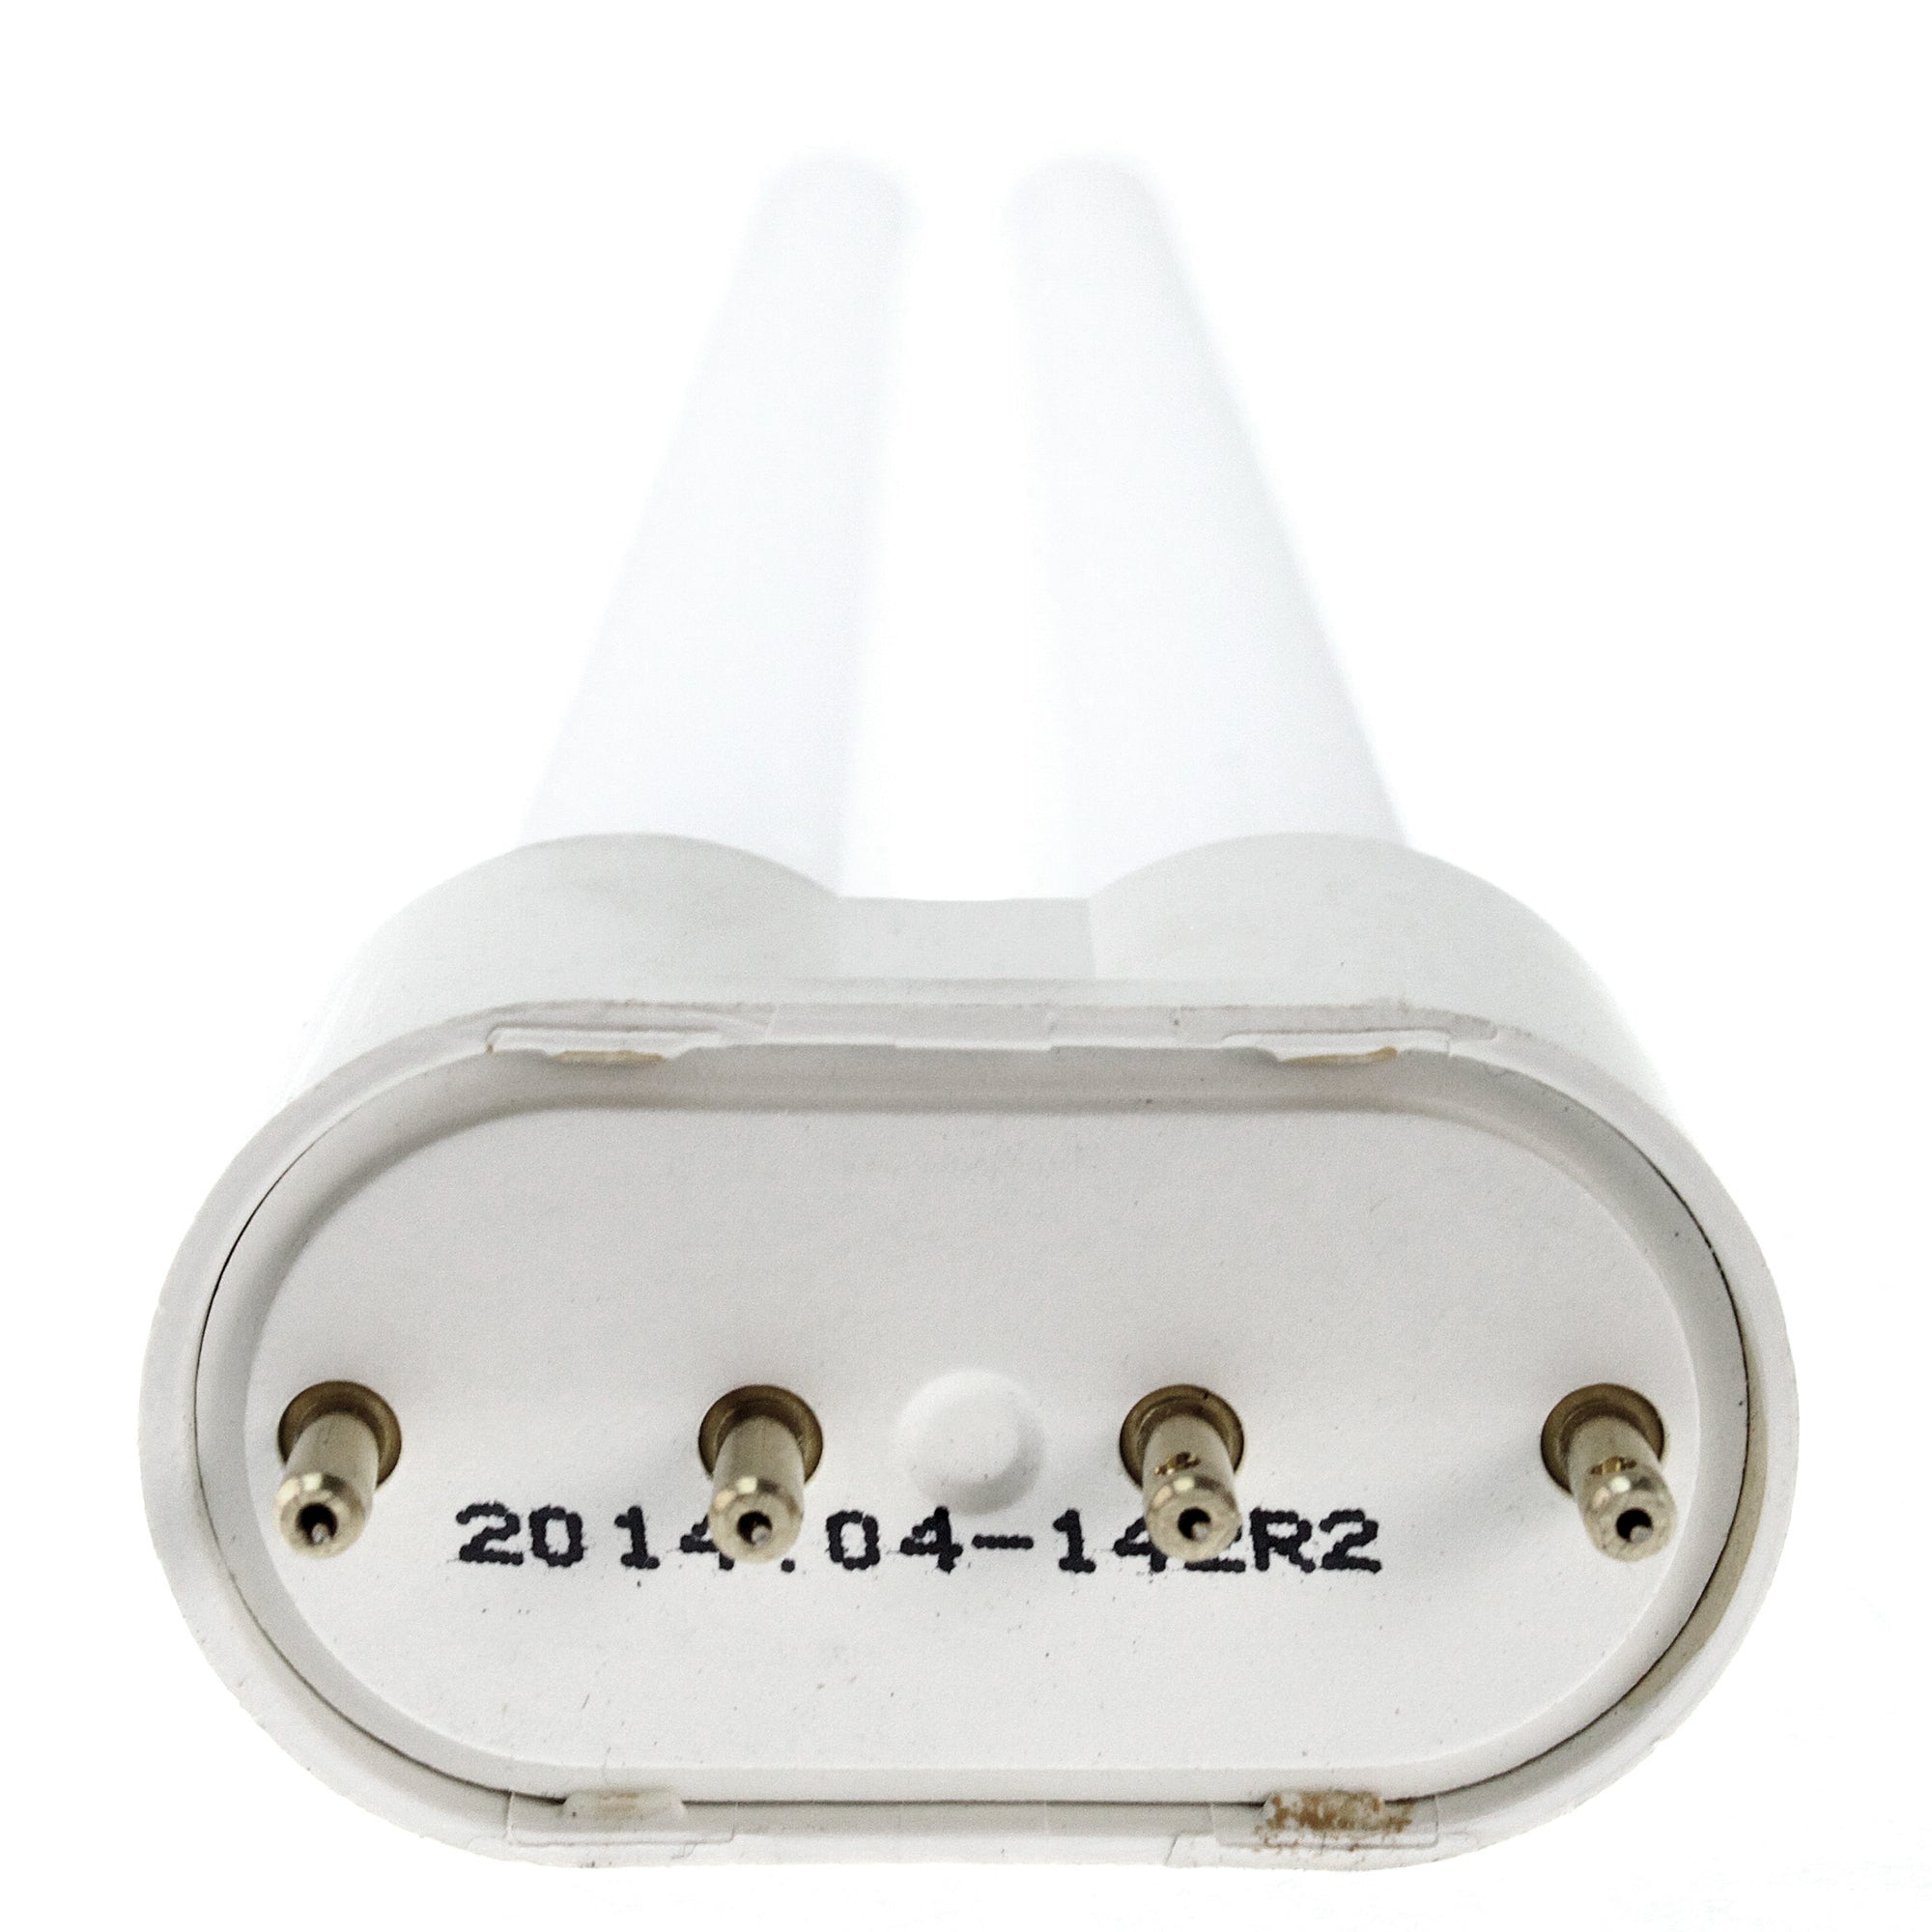 PHILIPS PL-L24W/835/4P BASE COMPACT FLOURESCENT LAMP, 2G1